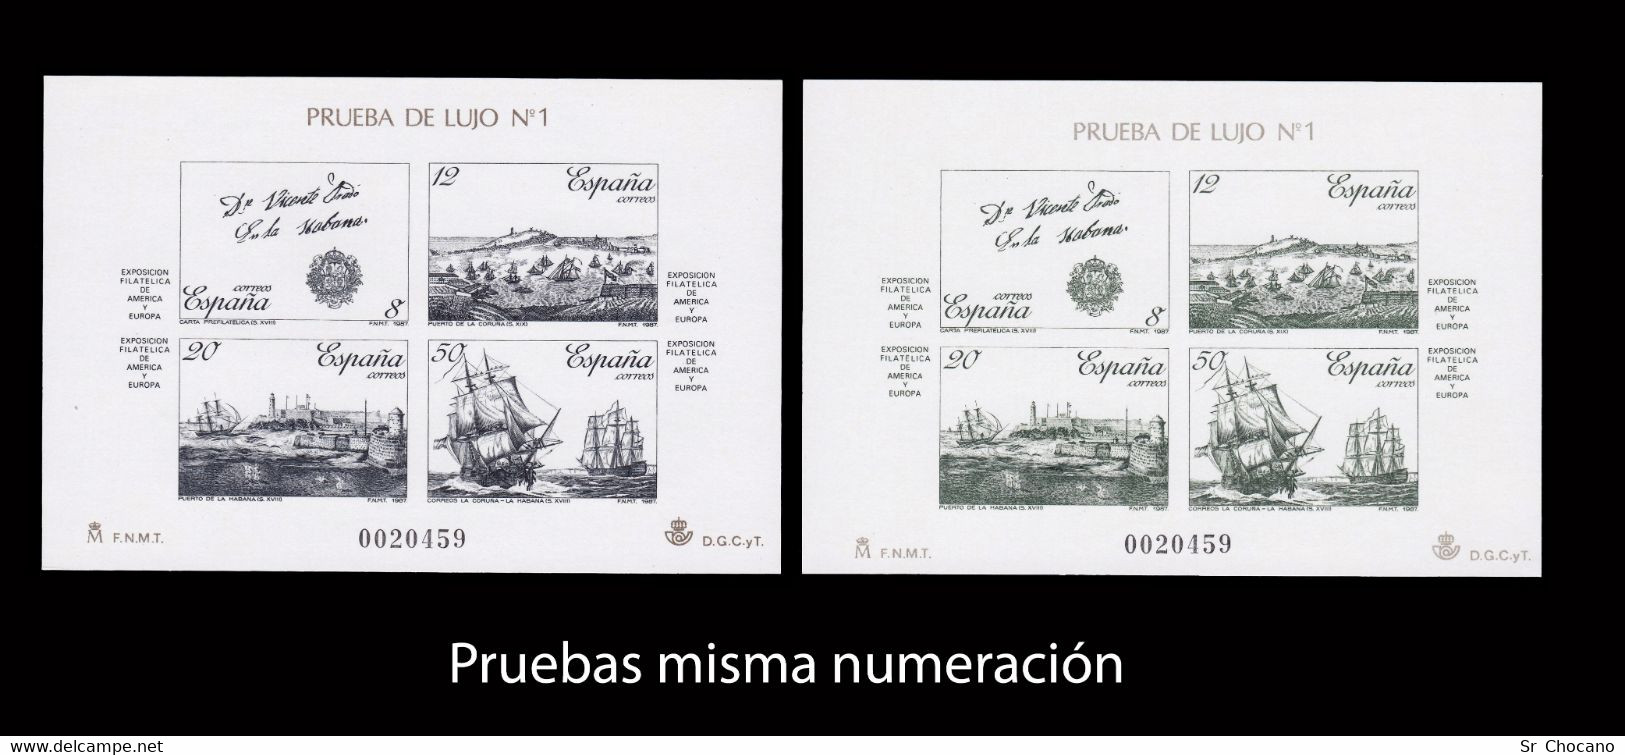 ESPAMAER 87.Hoja+Prueba Oficial.Edifil 12-13 Misma Numeración.MNH. - Commemorative Panes